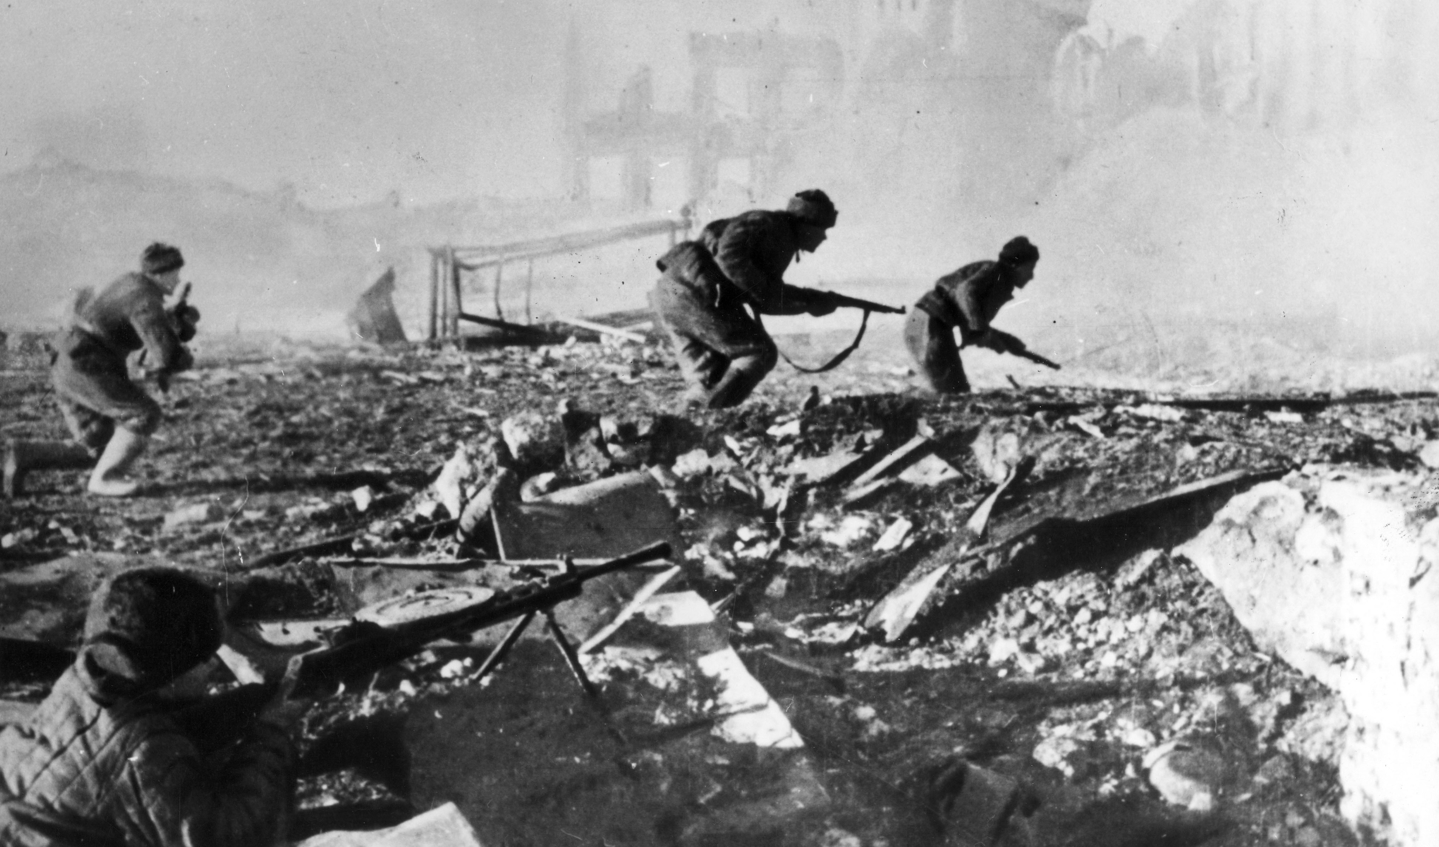 Soldaten van het Rode Leger in gevecht in Stalingrad, september 1942.